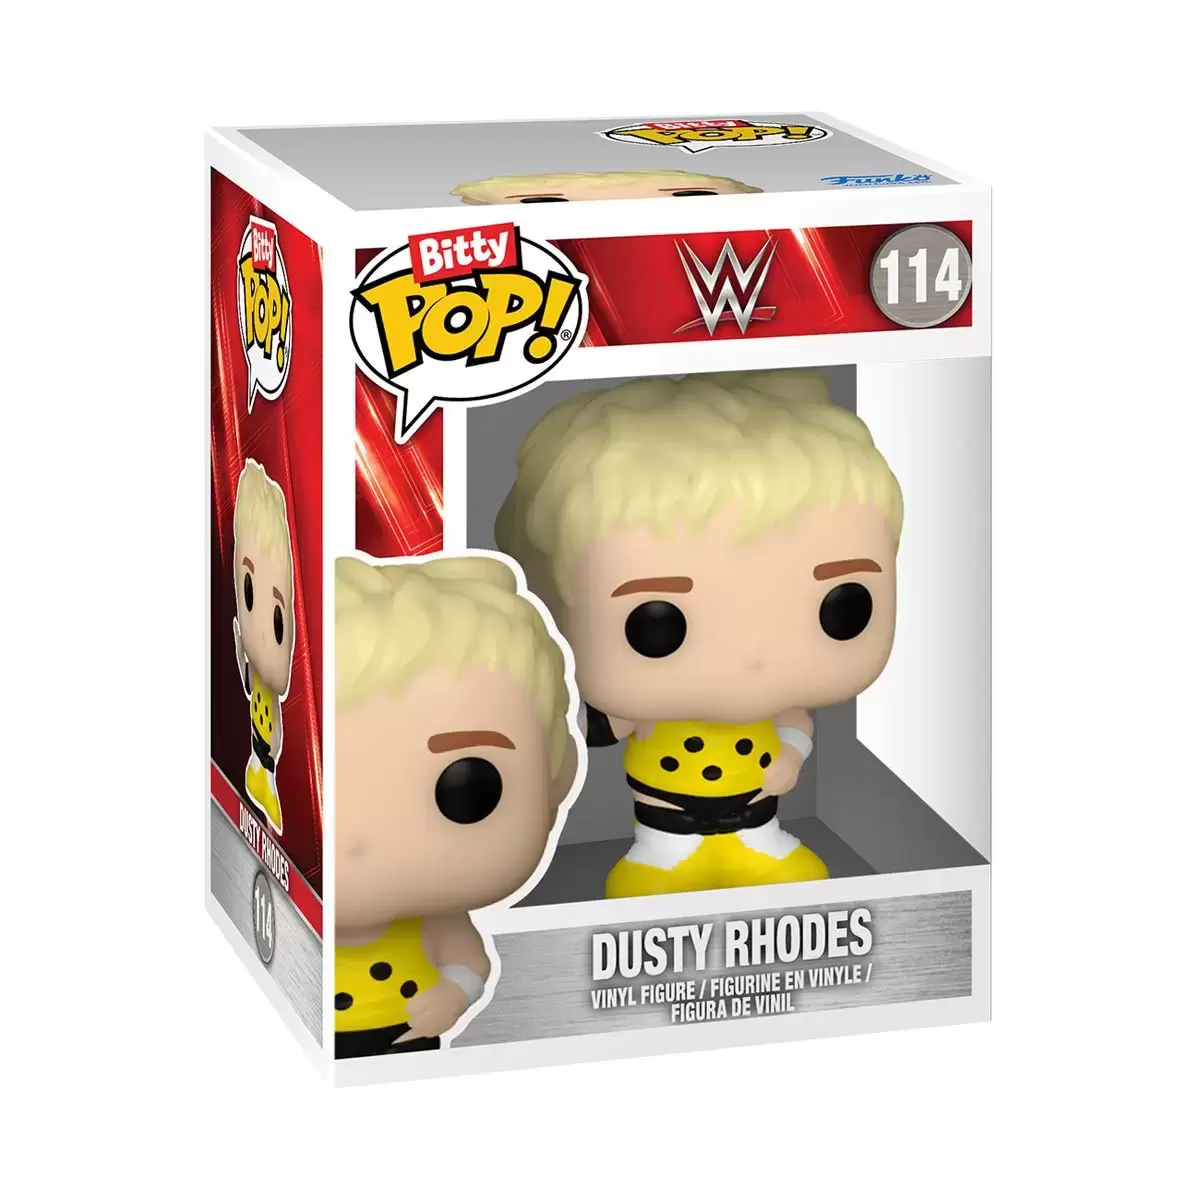 Bitty POP! - WWE - Dusty Rhodes